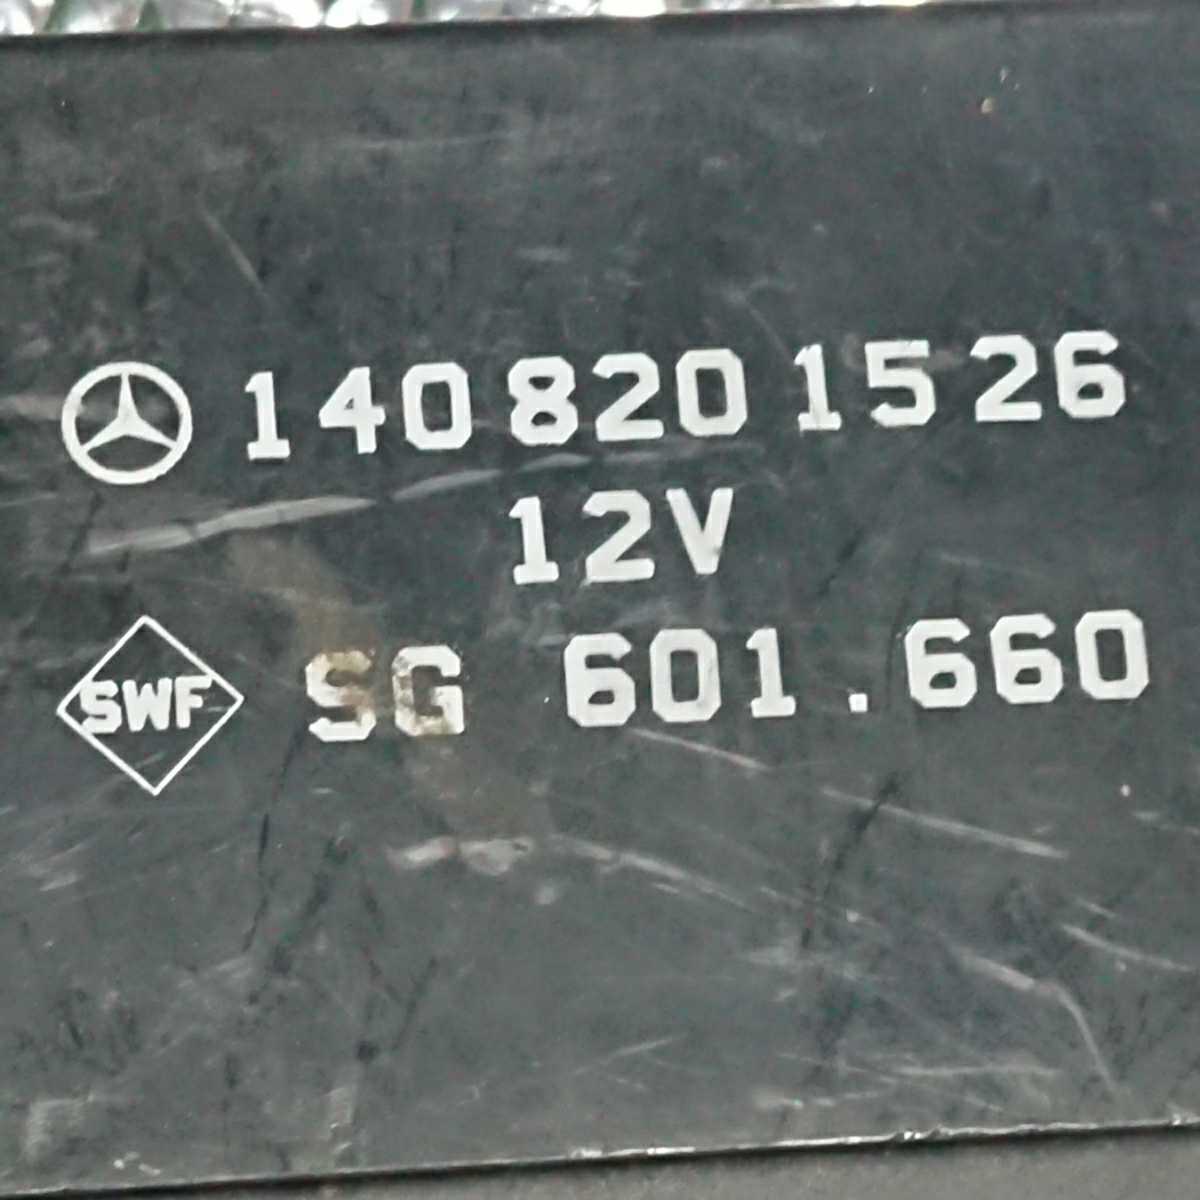 MC-73  Mercedes benz  92～99 Год выпуска  W140 S класс   сиденье  ...  контроль    модуль   блок  ⑤ 140 820 15 26